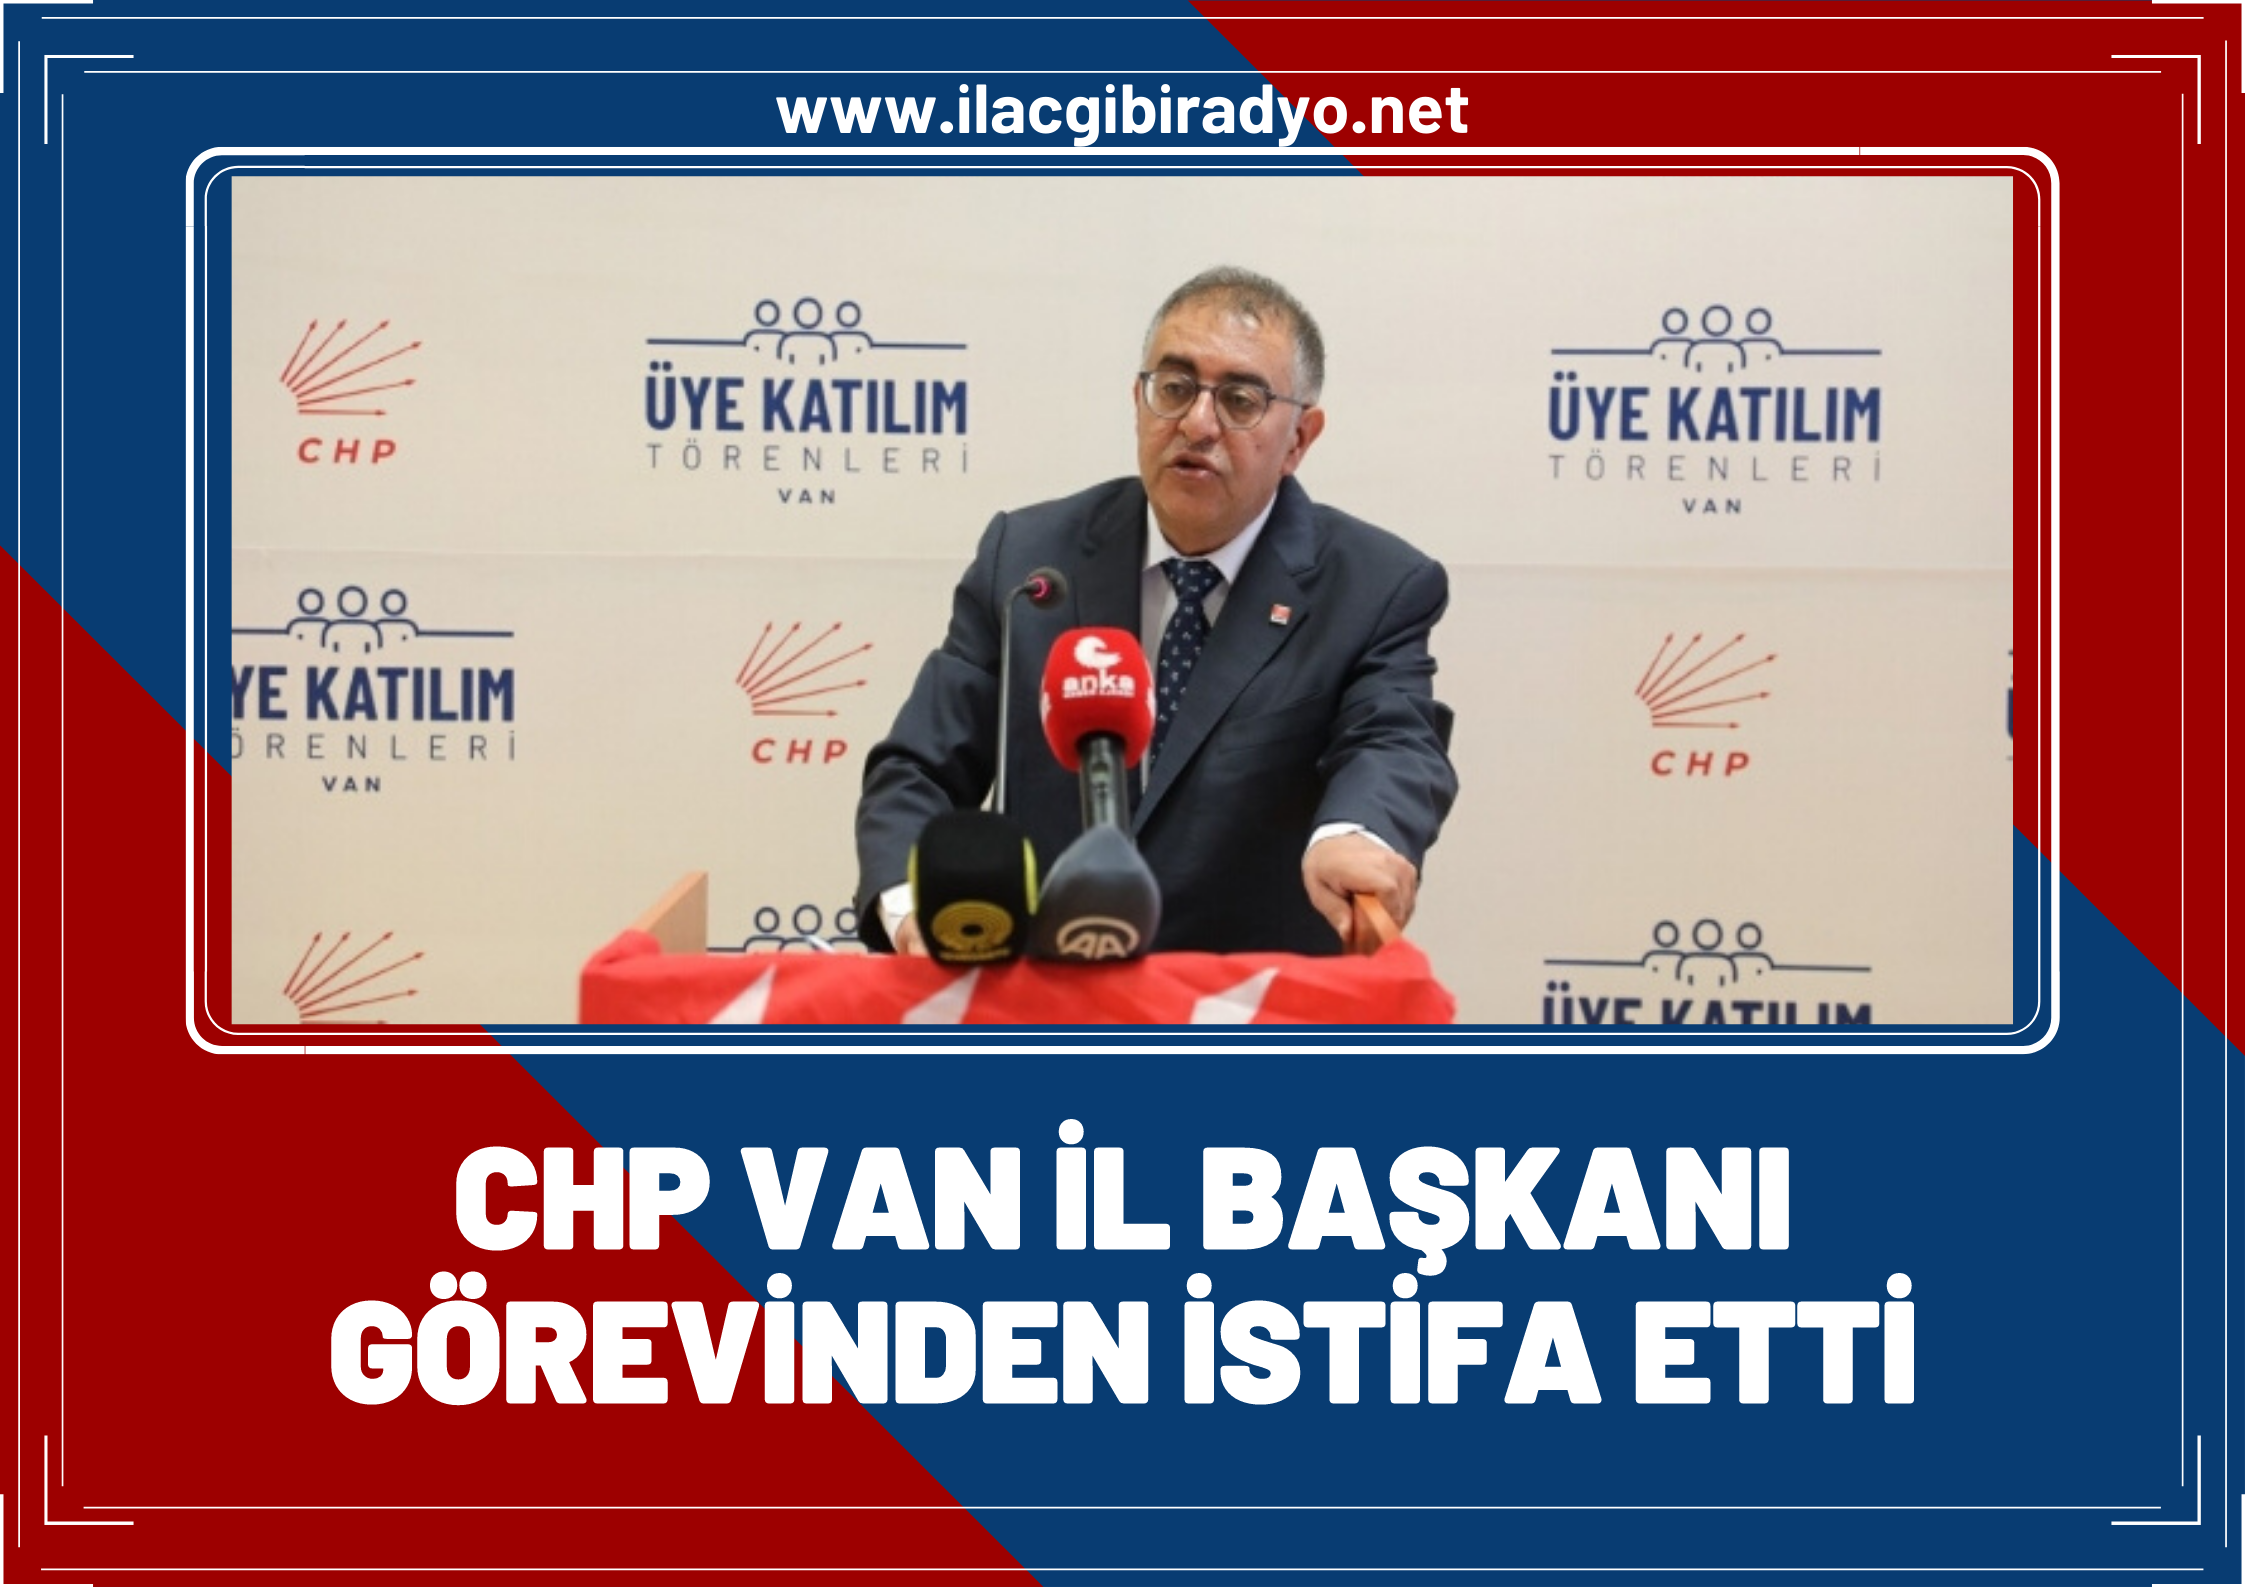 Flaş! CHP Van il başkanı görevinden istifa etti!